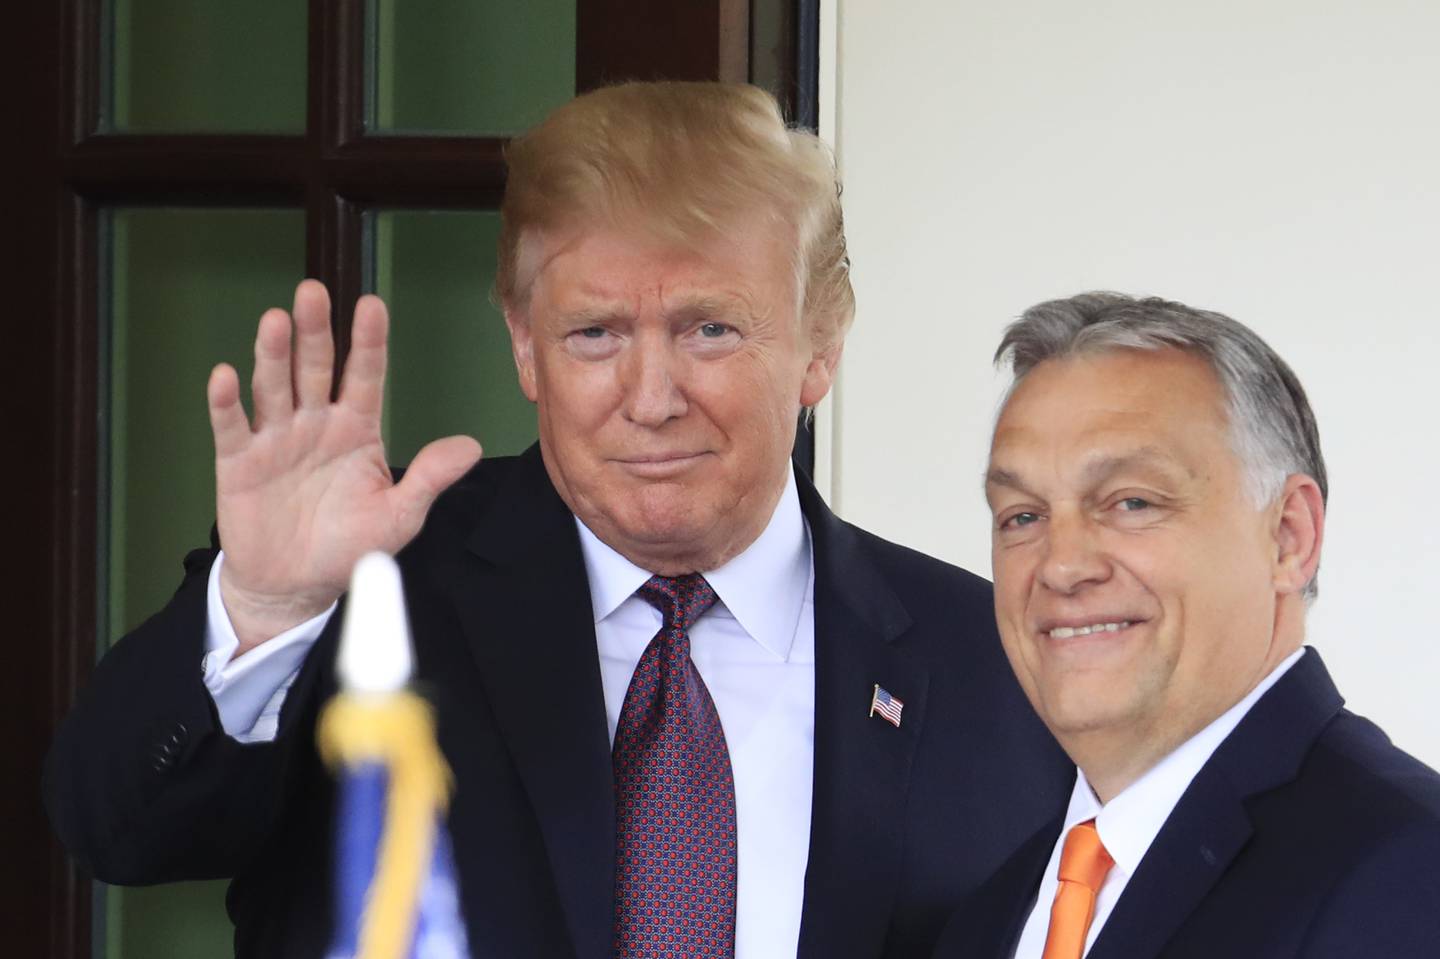 Viktor Orbán har flere politiske tilhengere og støttespillere, blant annet til bevegelsen rundt Trump. Her fra et møte med den daværende amerikanske presidenten i 2019.